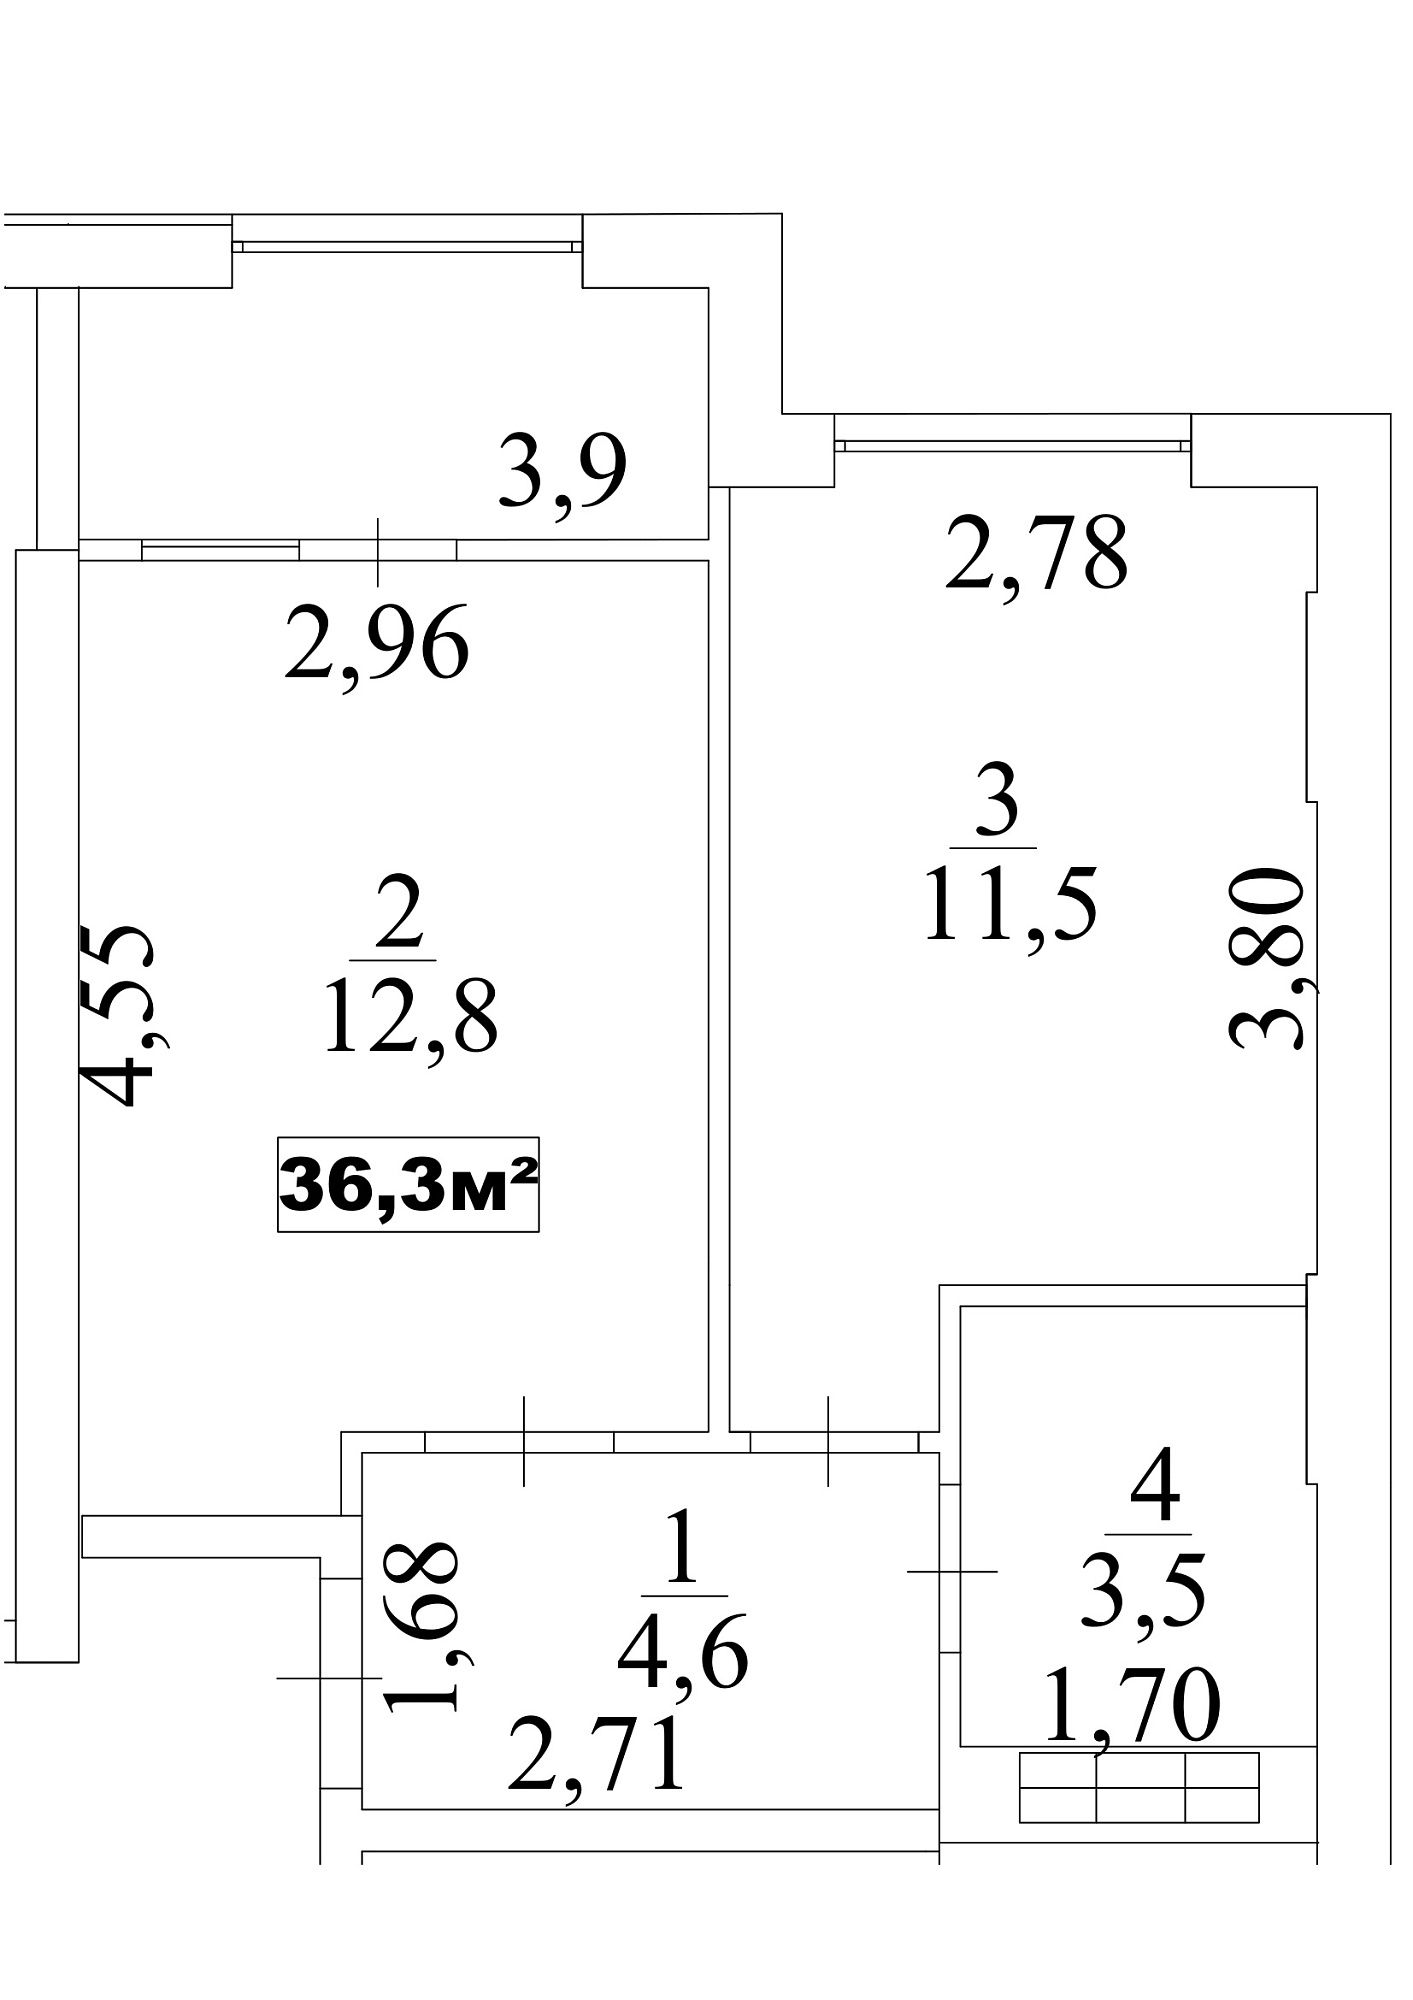 Планування 1-к квартира площею 36.3м2, AB-10-09/0079б.